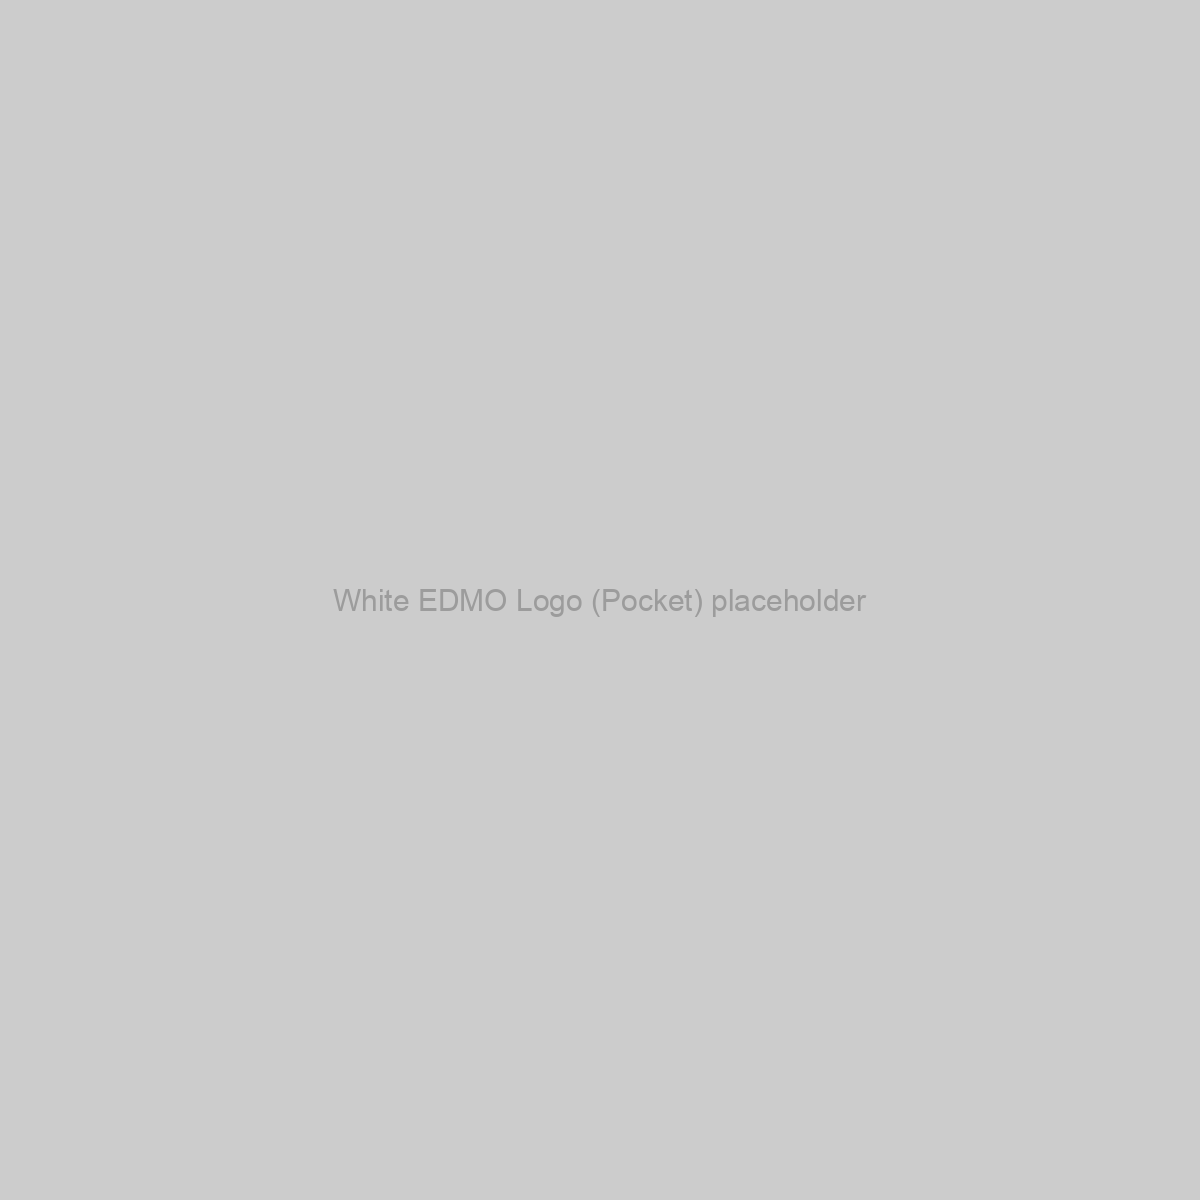 White EDMO Logo (Pocket) Placeholder Image